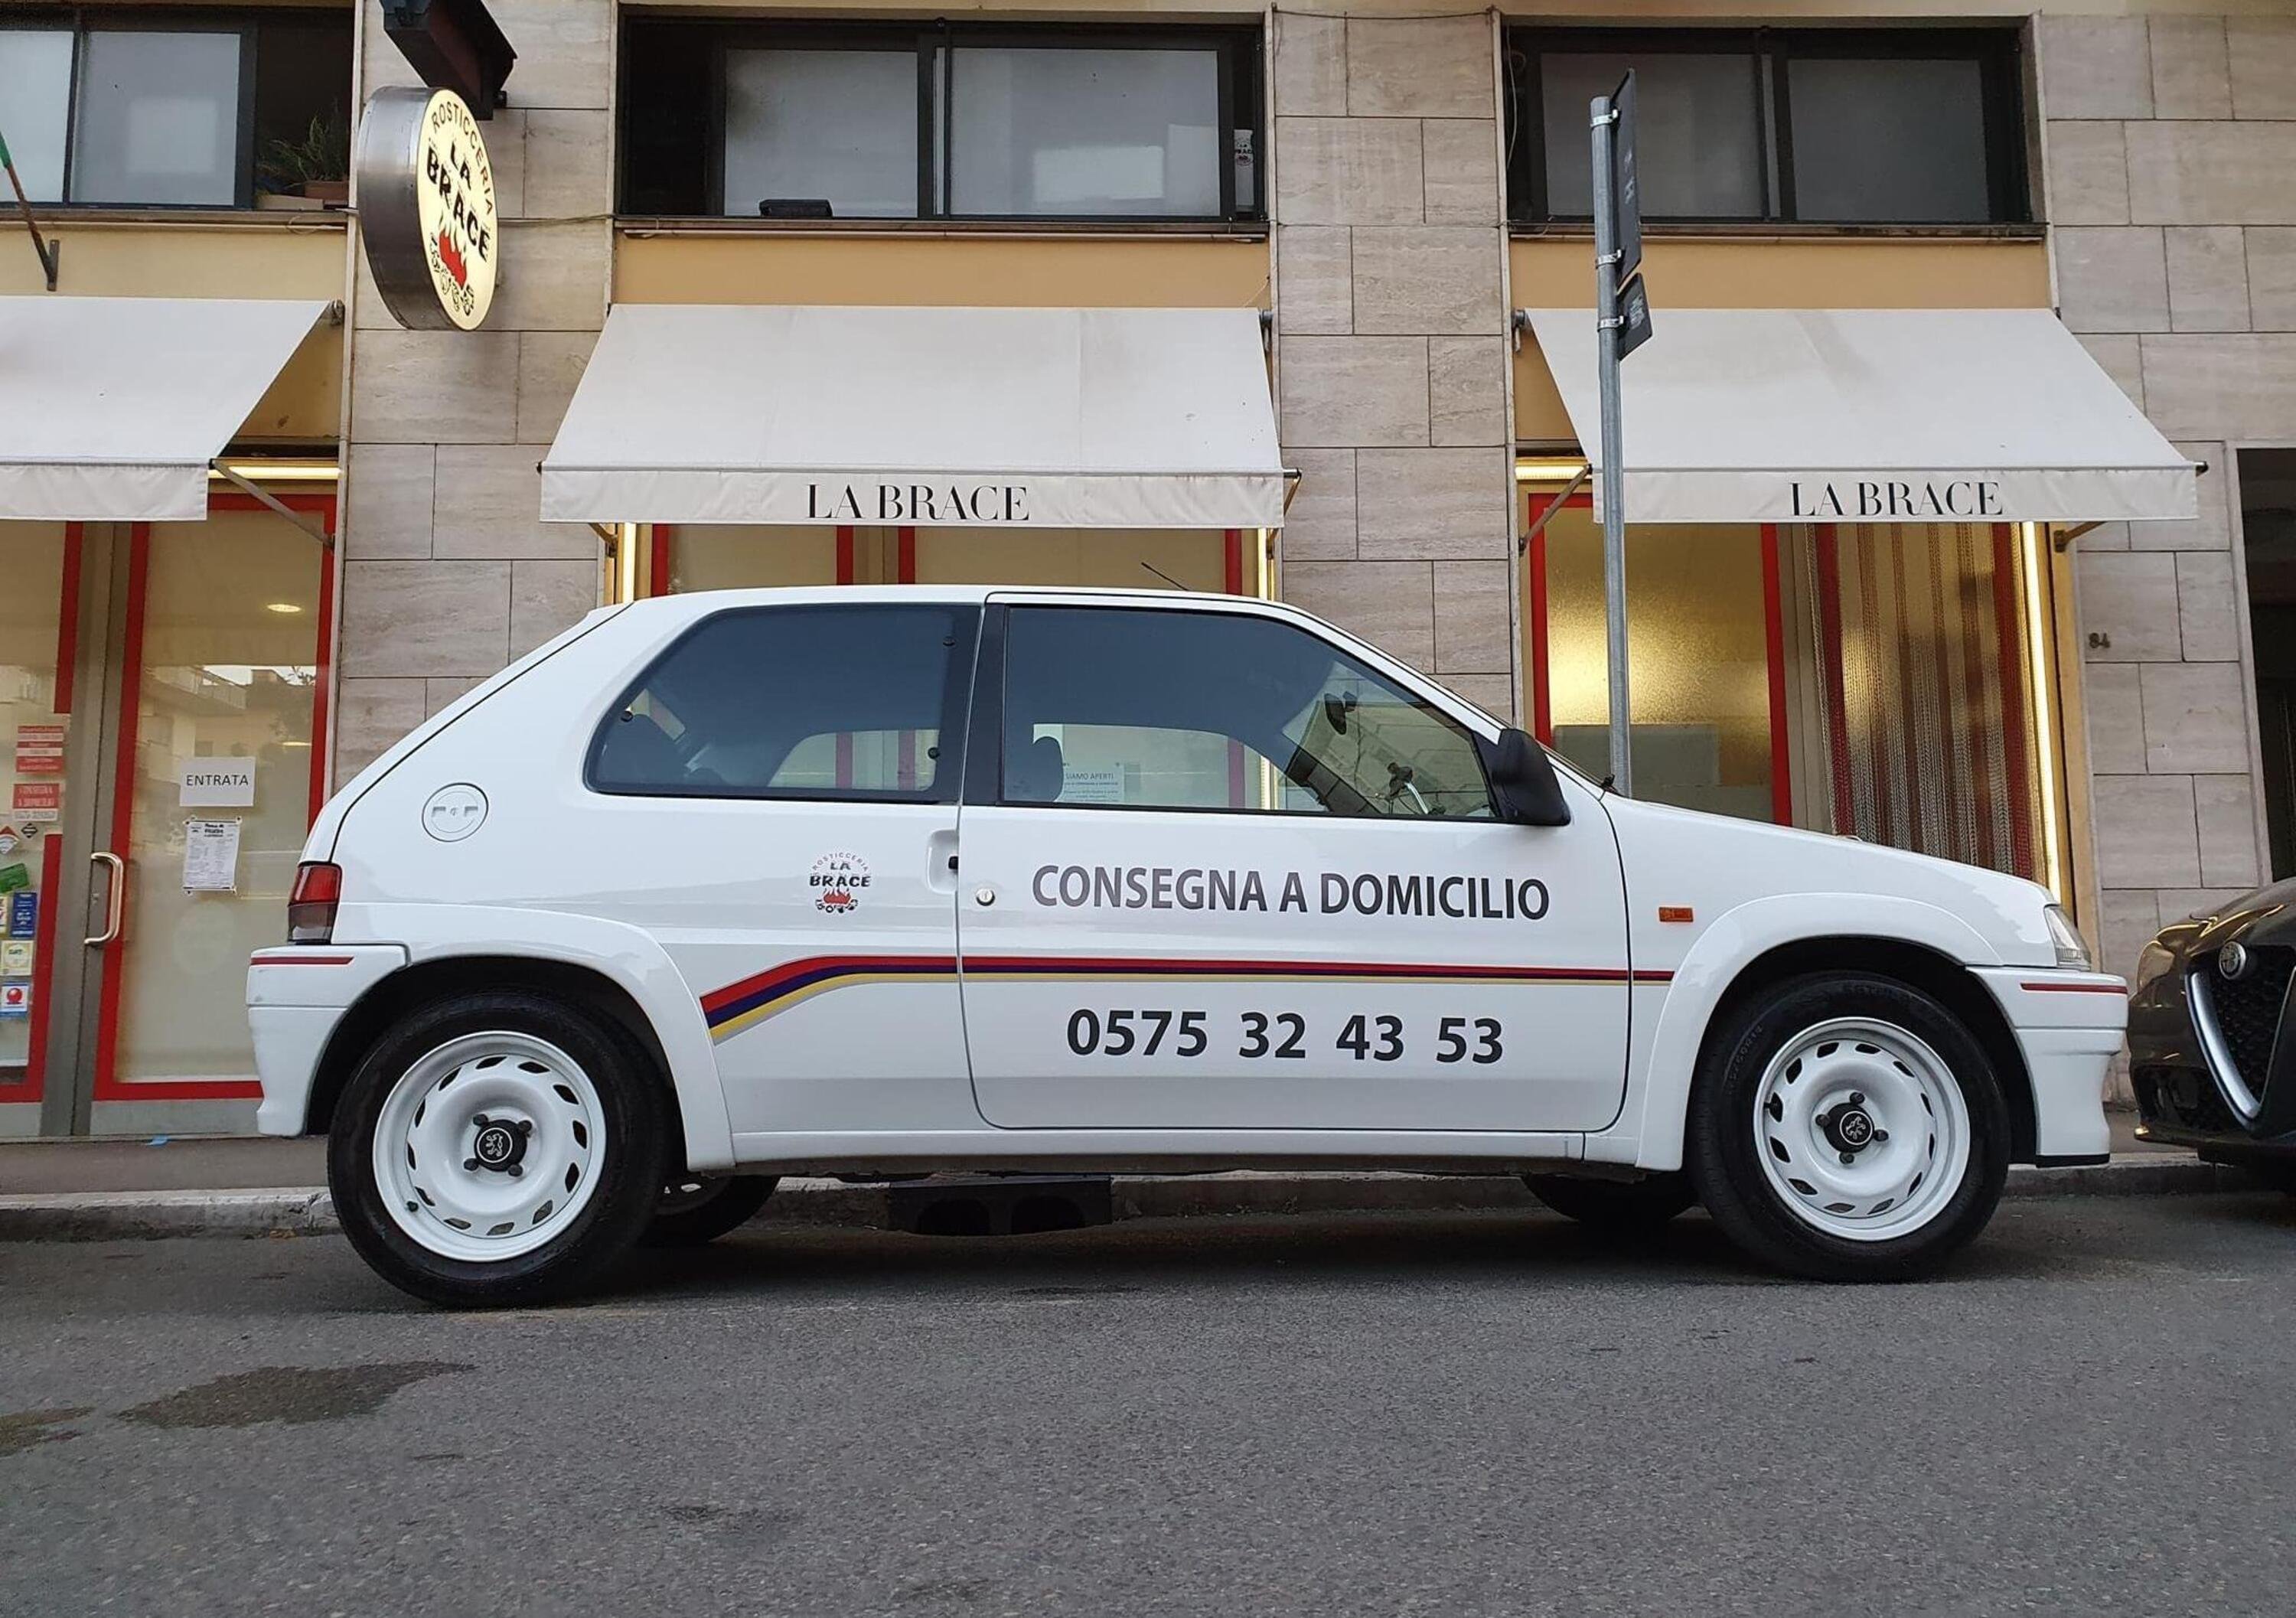 Consegna a domicilio con una Peugeot 106 Rallye: succede ad Arezzo